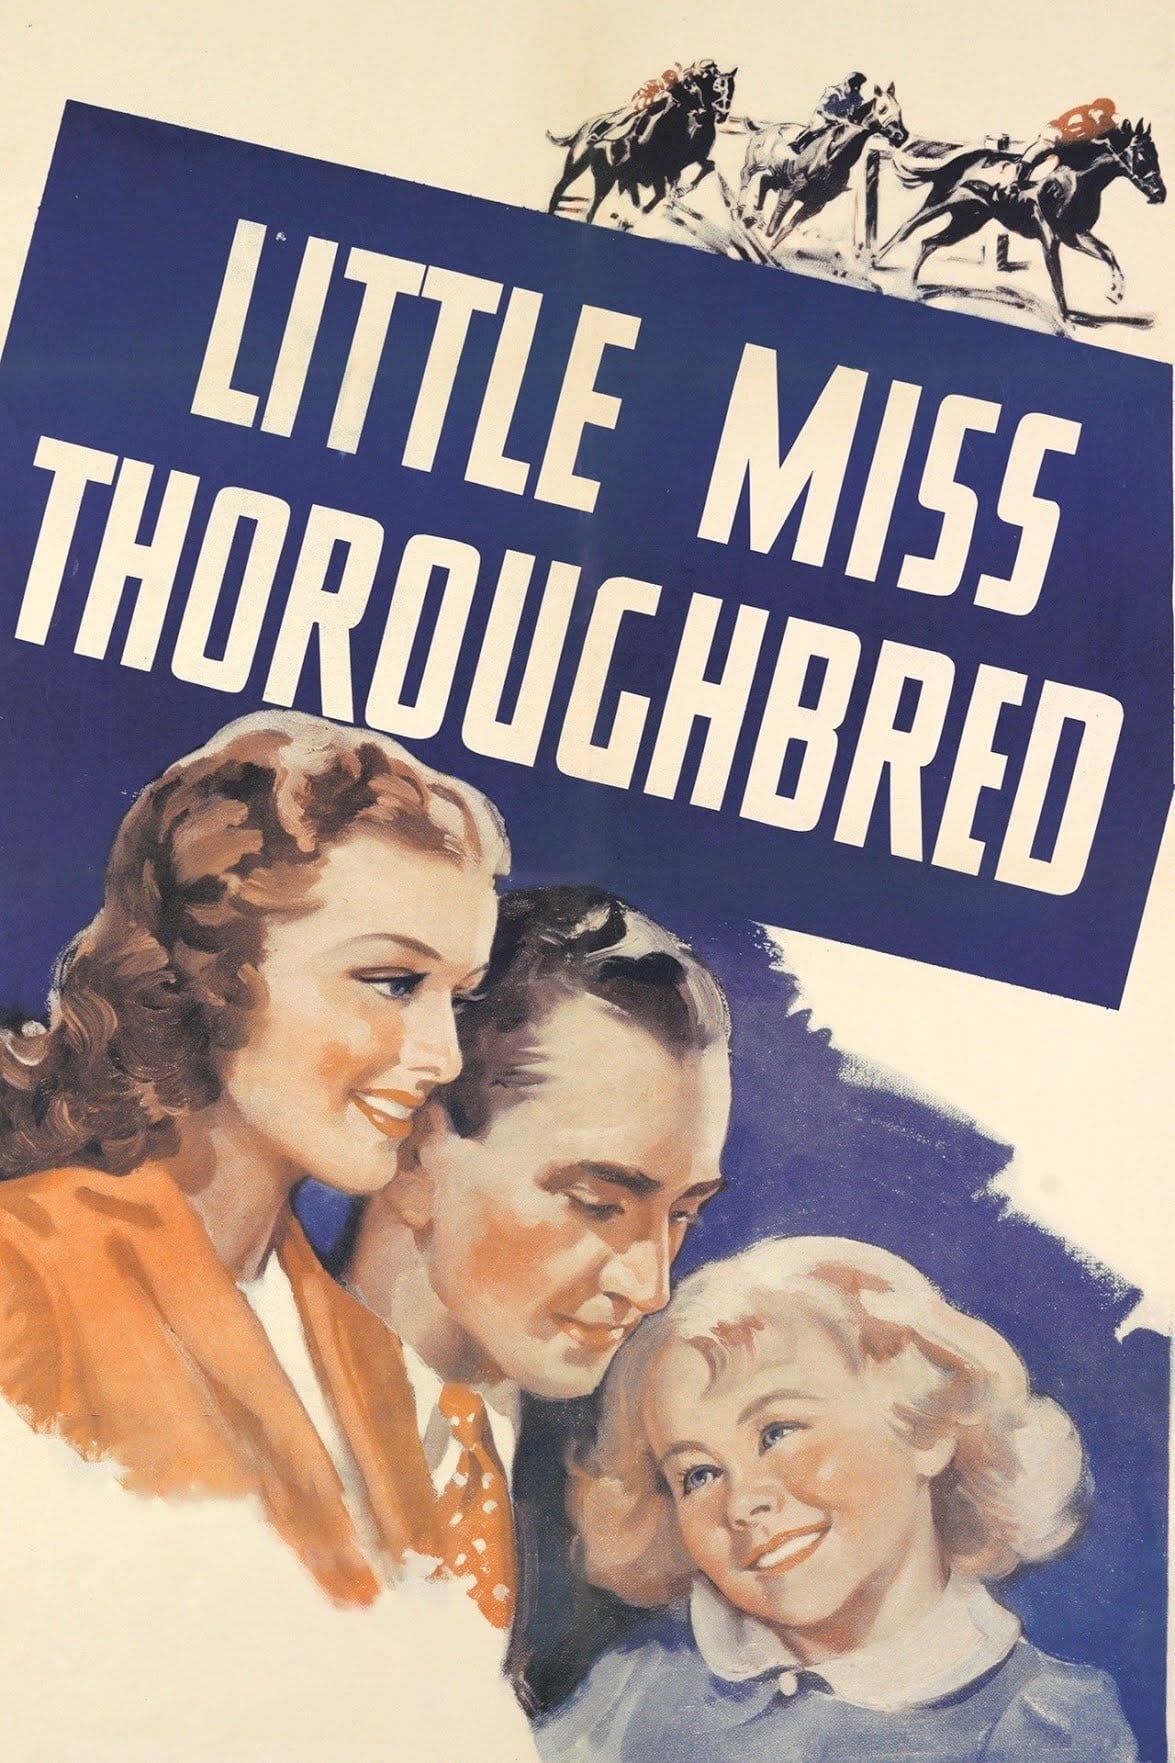 Little Miss Thoroughbred film